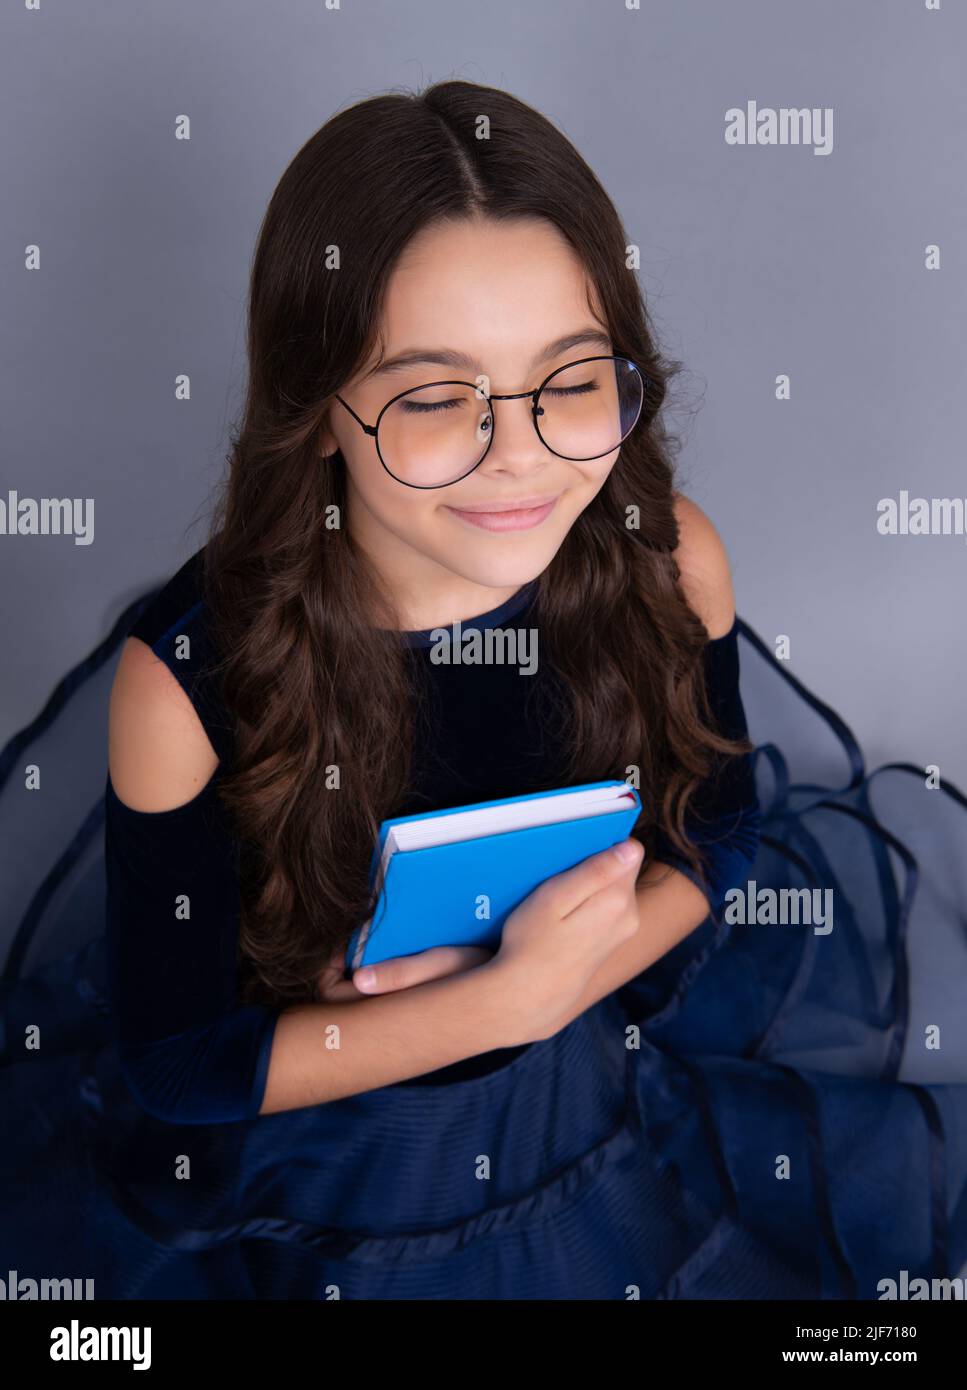 Träumende Schülerin in Kleid halten Buch und Copybook bereit zu lernen. Schulkinder träumen auf isoliertem grauen Hintergrund. Stockfoto